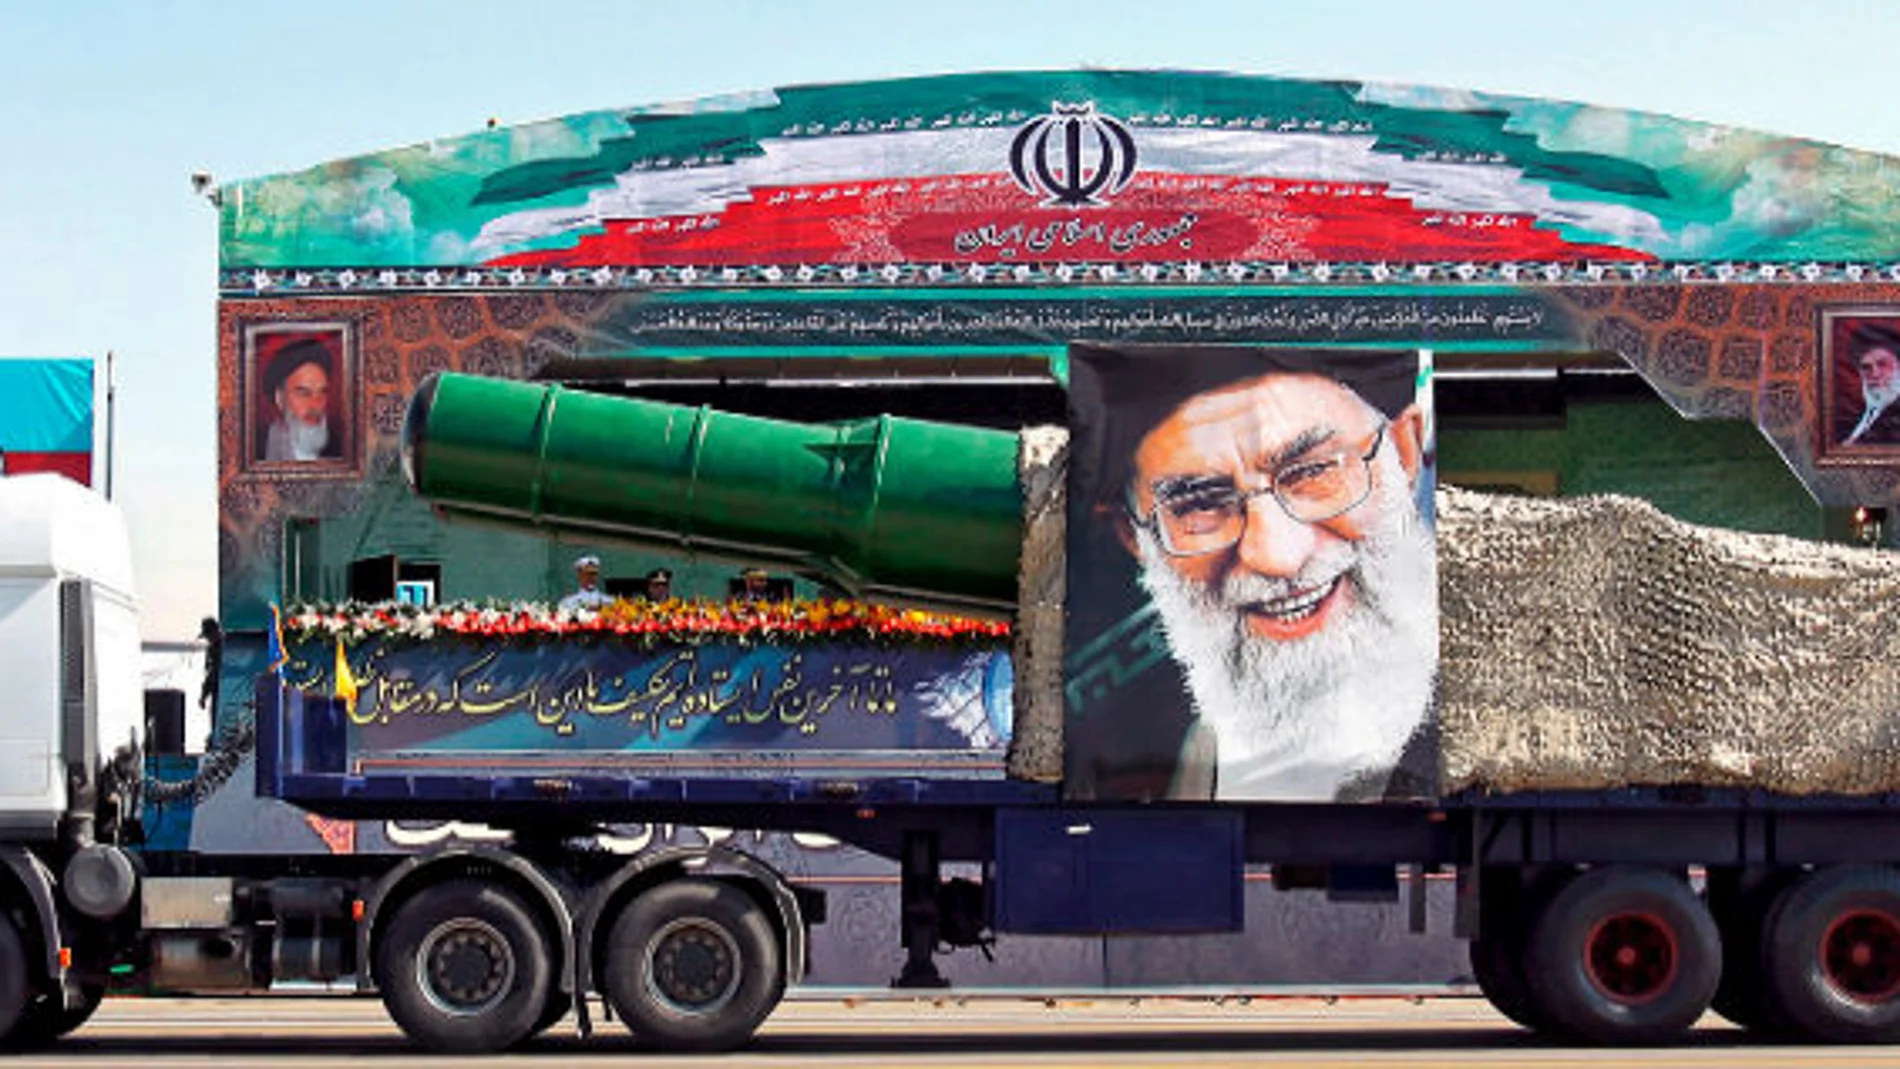 Un camión en Teherán, con un misil en su interior y el rostro de Jameini / Reuters